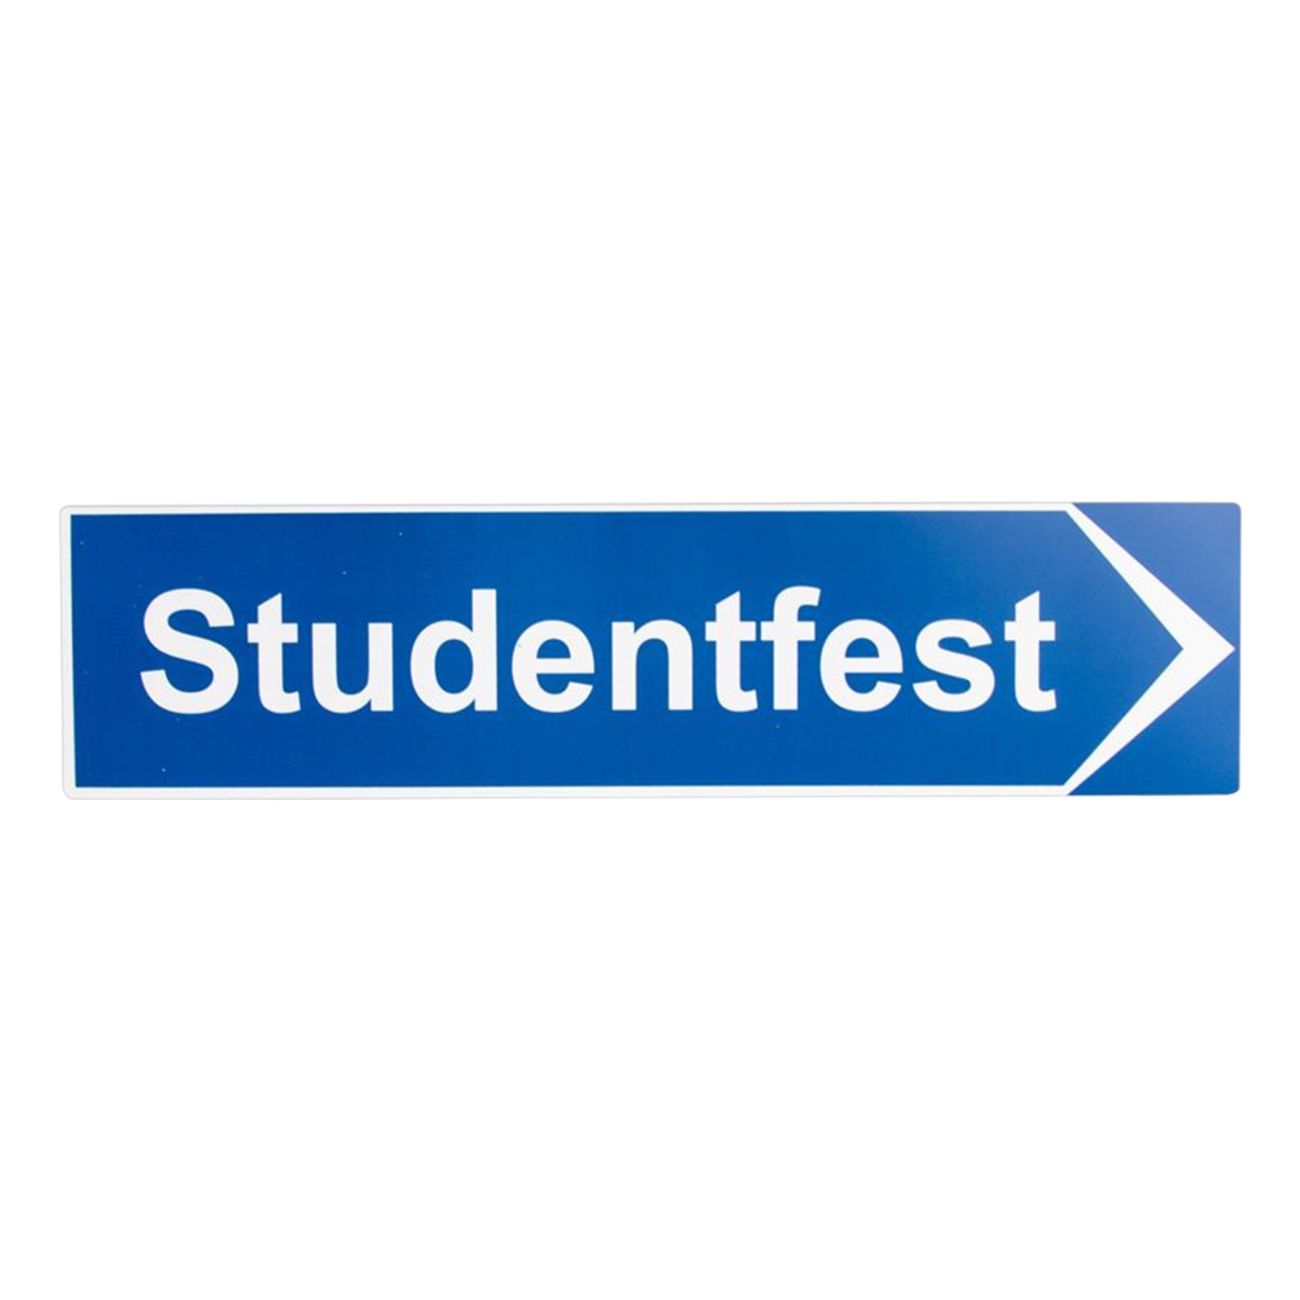 vagskylt-studentfest-65727-2